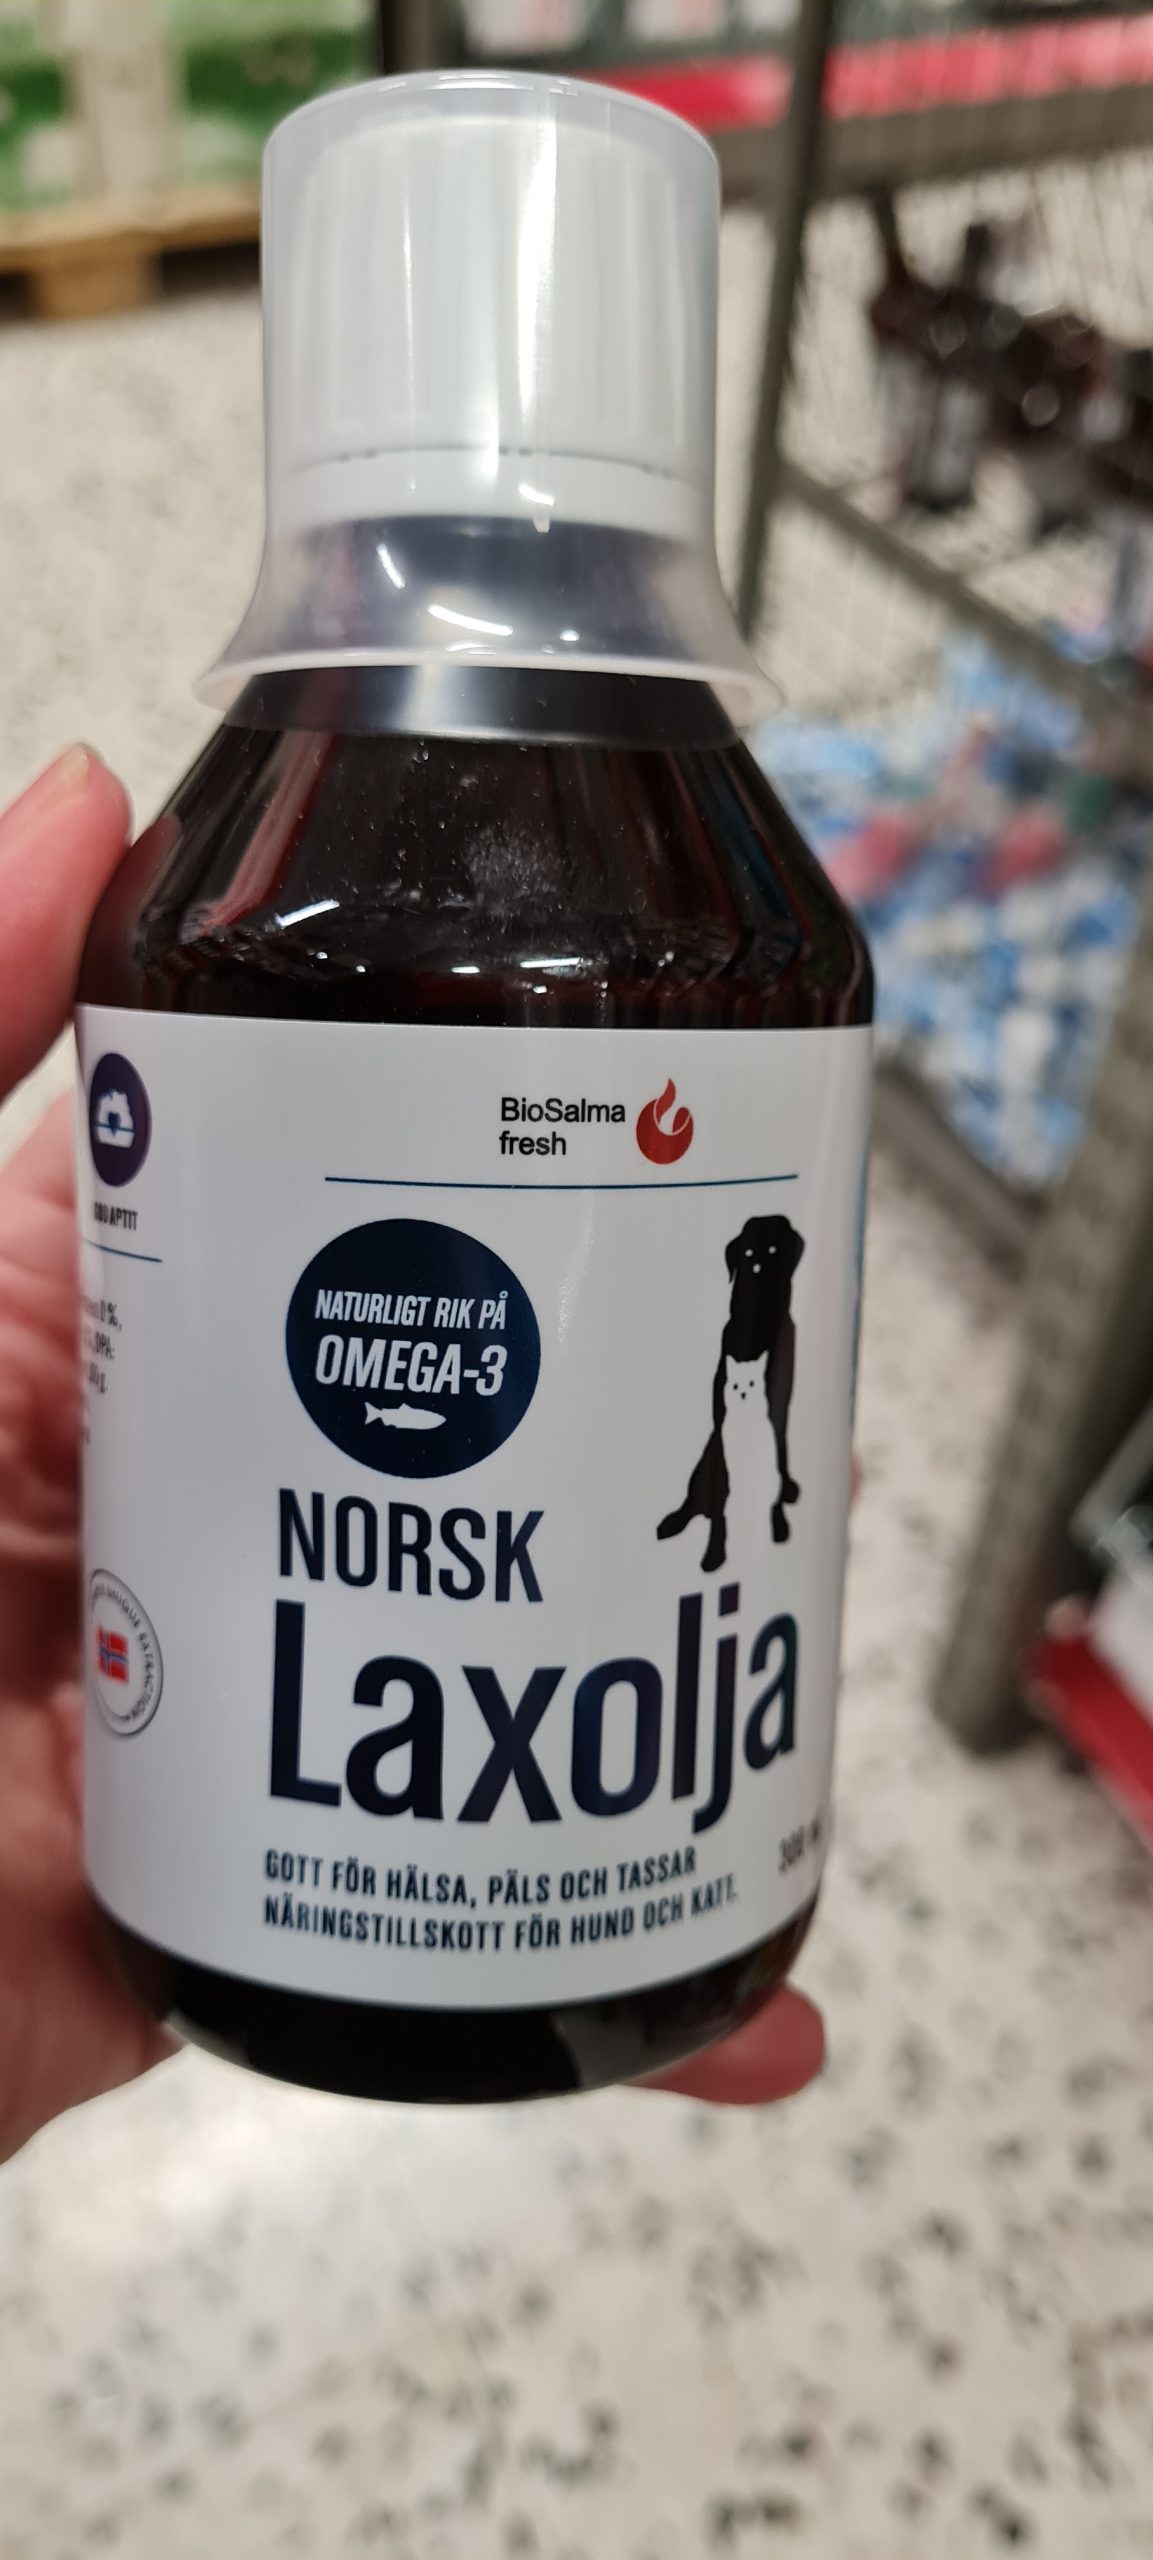 Norsk laxolja för hundar från Bio salma fresh